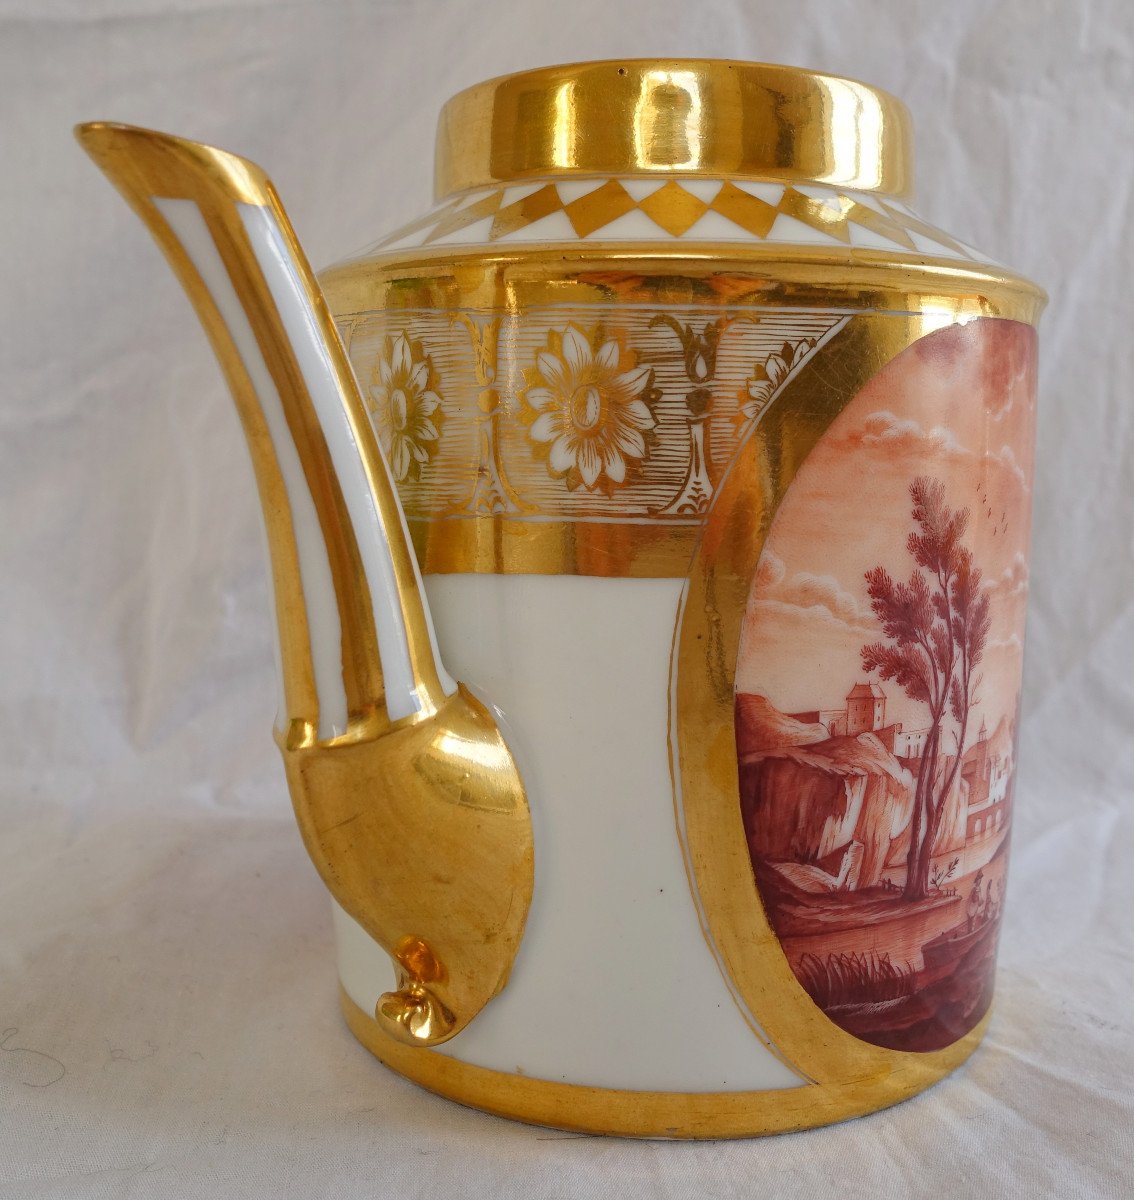 Schoelcher Manufacture - Directoire Empire Period Porcelain Teapot - Camaieu Landscapes-photo-2